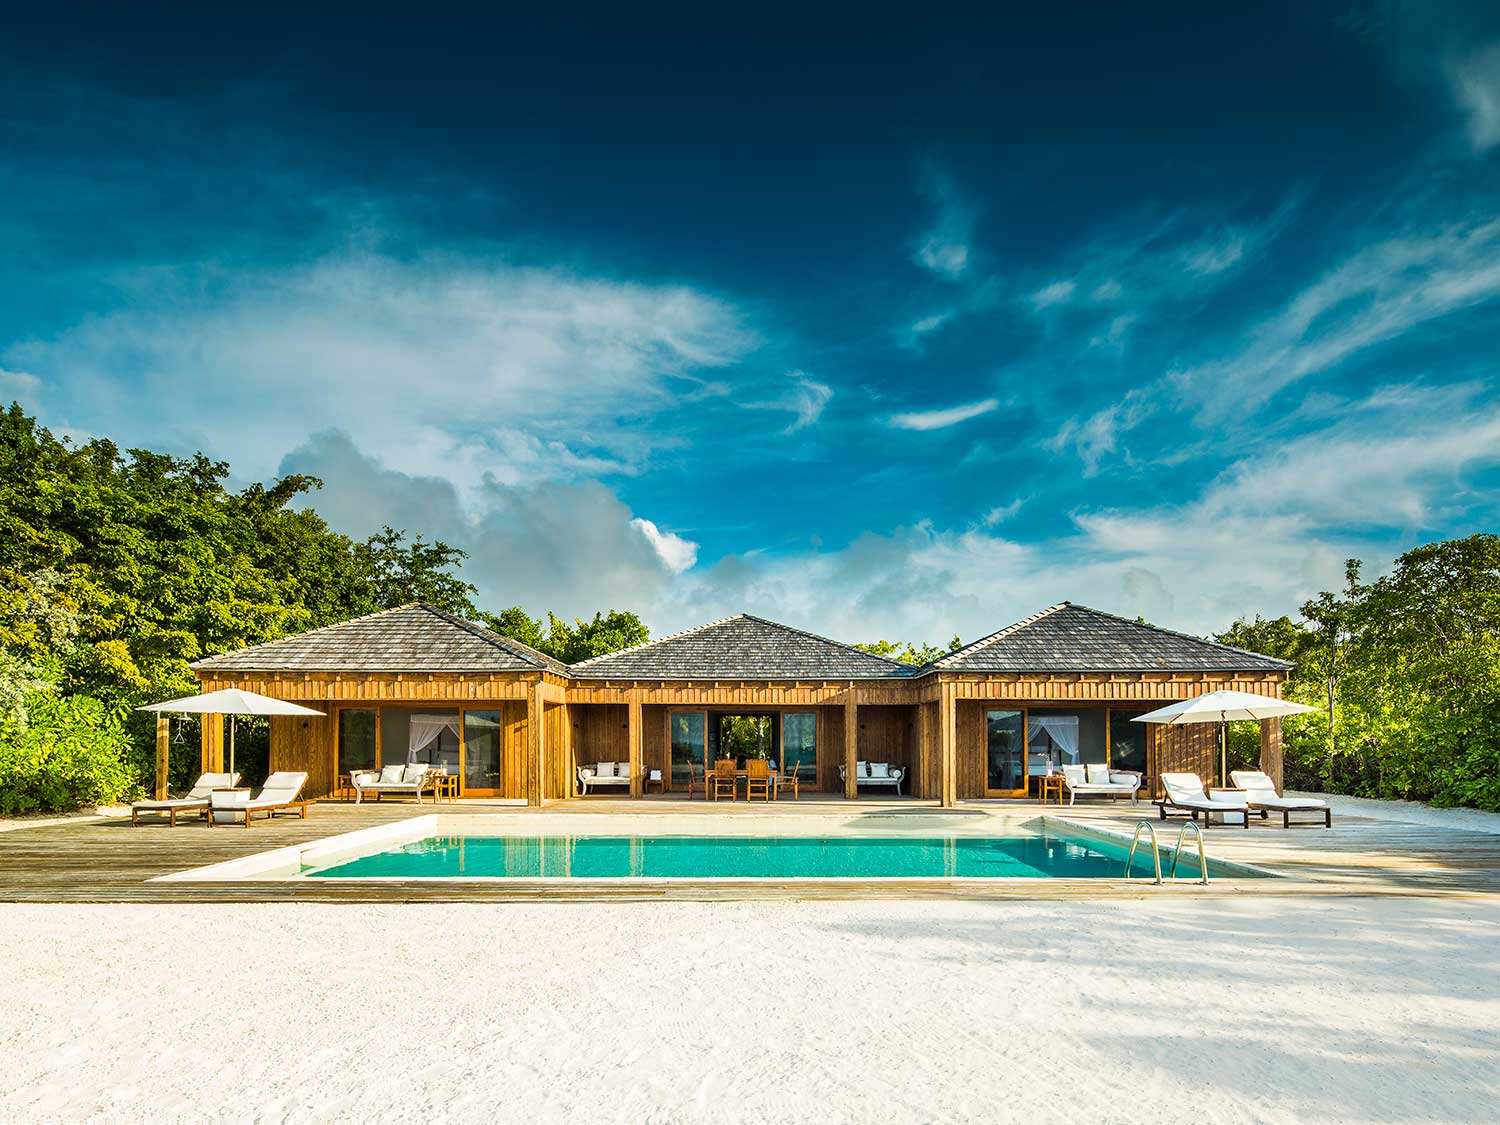 COMO Parrot Cay features private beach villas